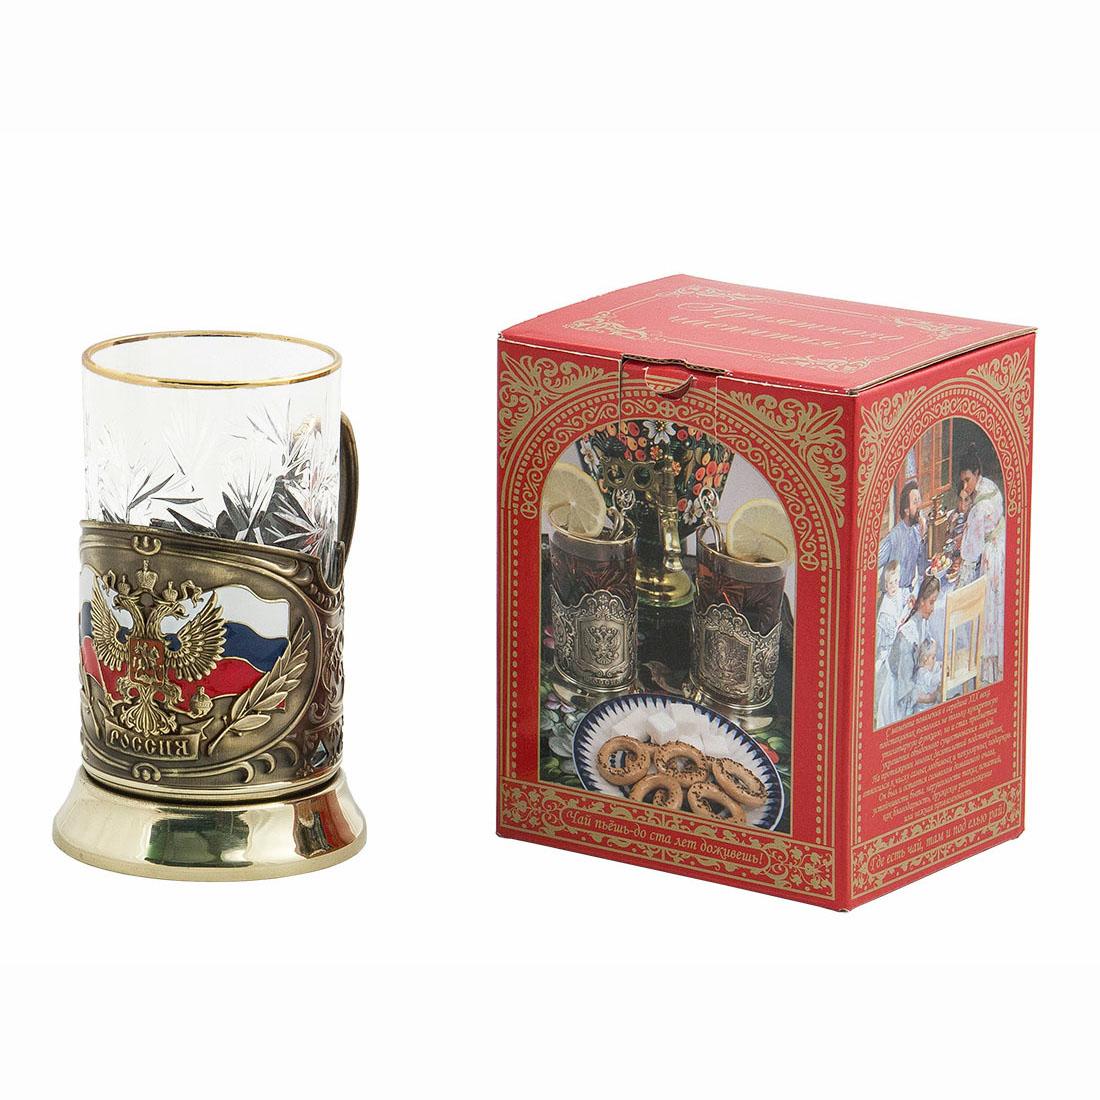 Подстаканник "Герб России" - картон.коробка, хруст.стакан, штамп, латунь, цветные эмали